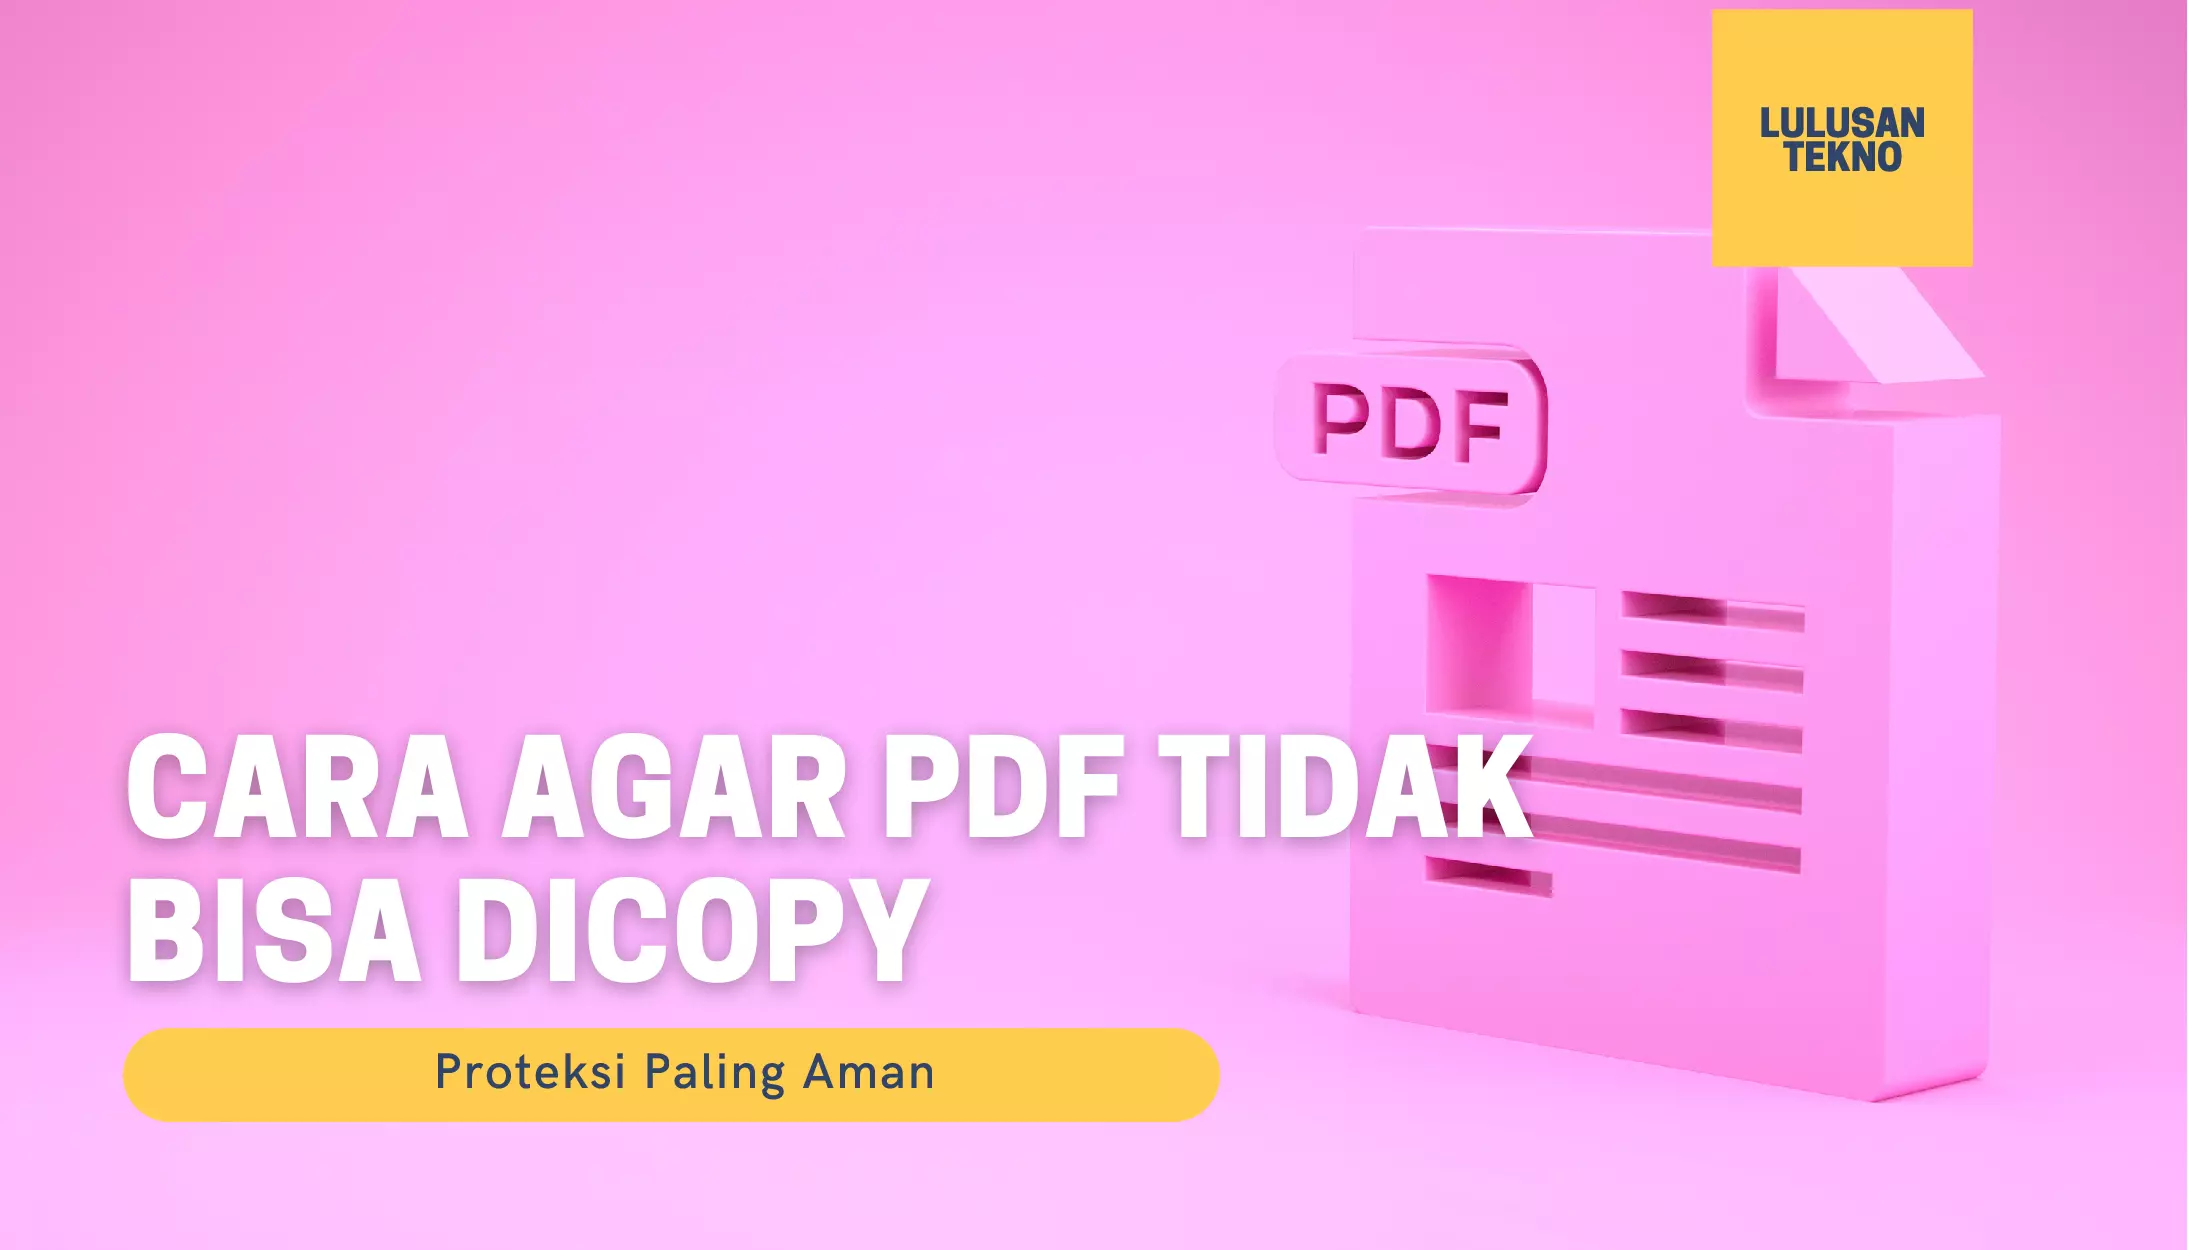 Cara agar PDF tidak bisa dicopy